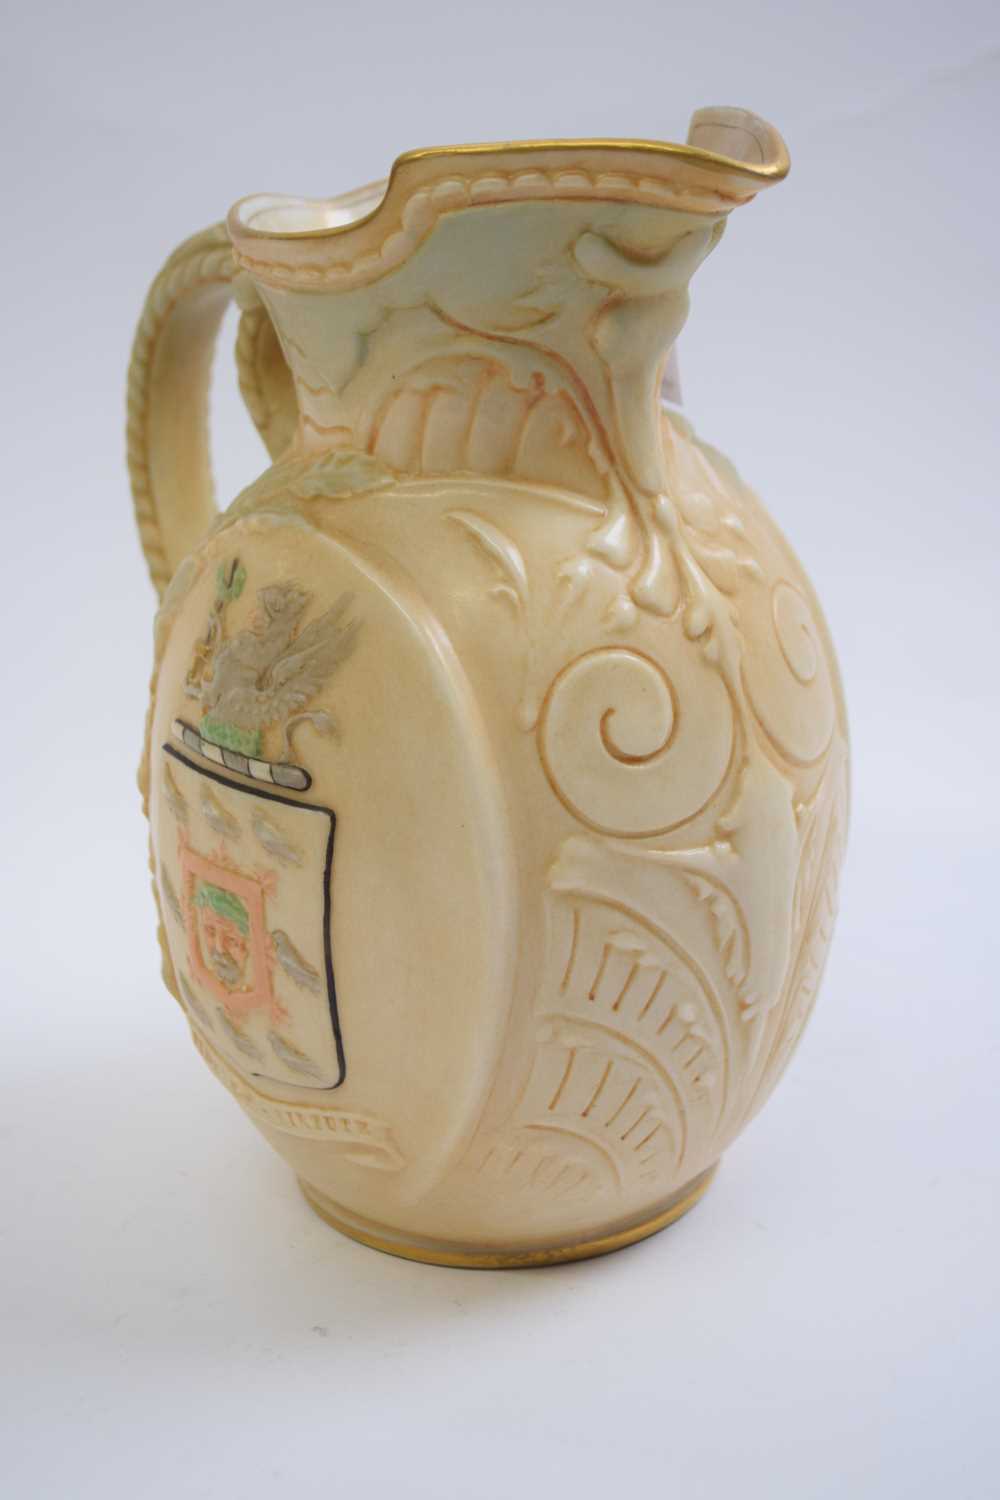 Doulton Burslam mug on ivory ground of Gladstone, 18cm high